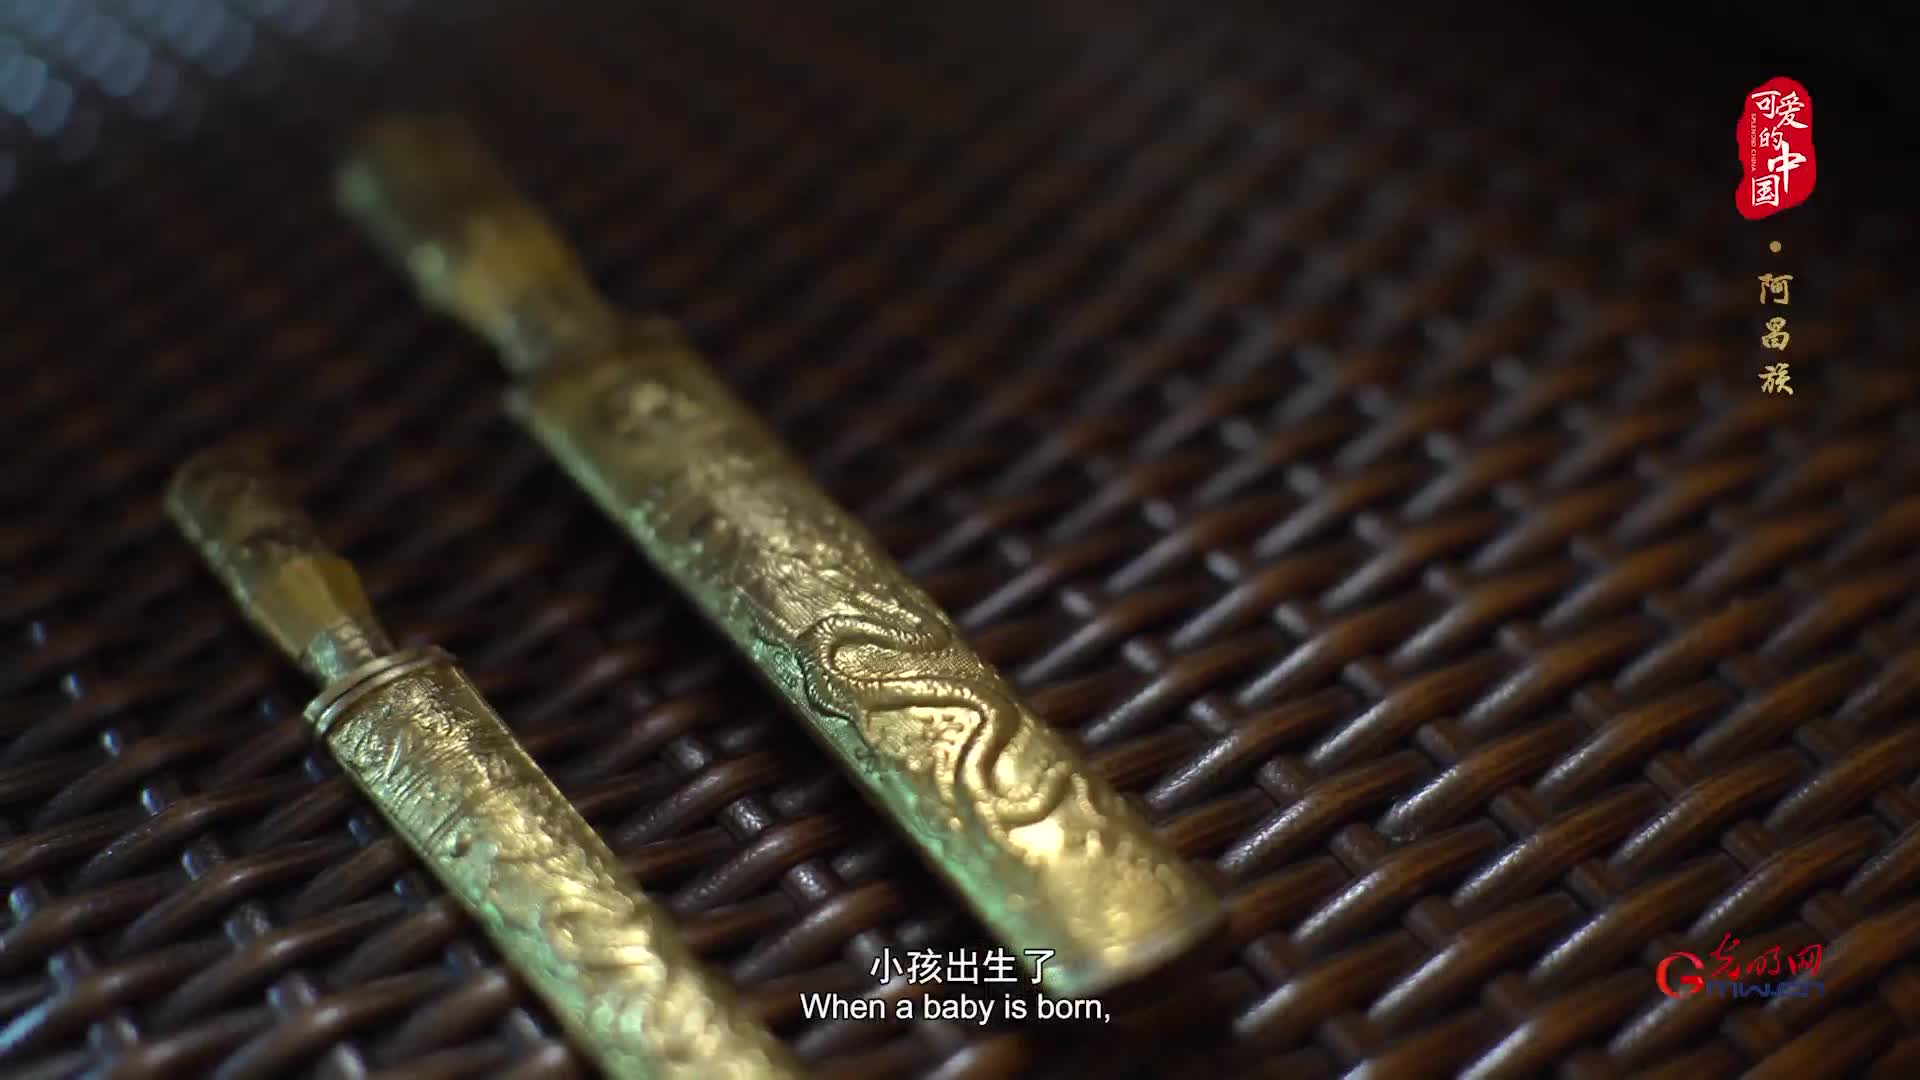 可爱的中国之阿昌族:揭开中国四大名刀之一户撒刀的神秘面纱